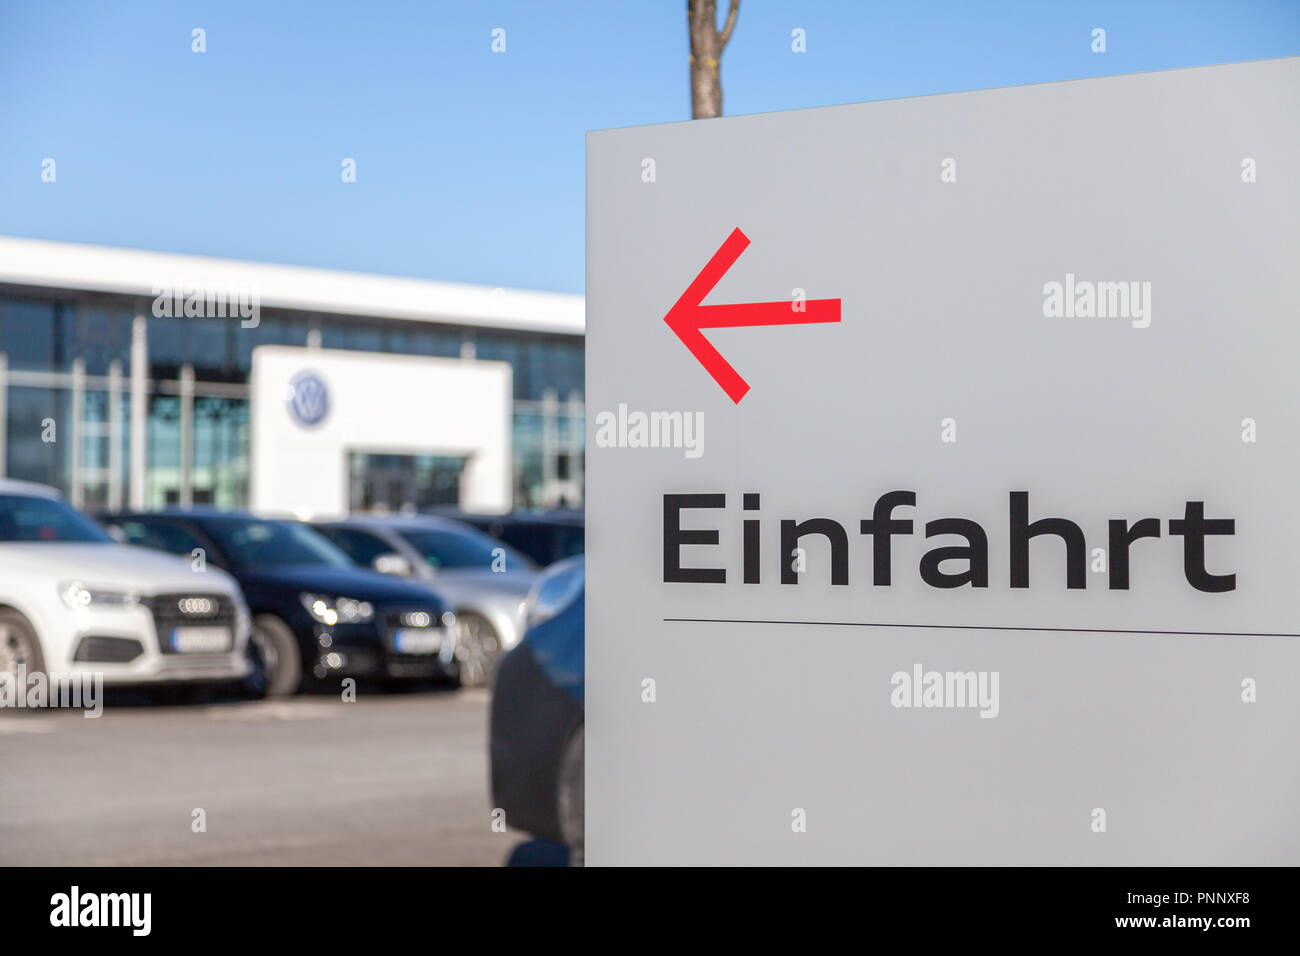 FUERTH / ALLEMAGNE - 25 février 2018 : Einfahrt panneau près d'un concessionnaire automobile Volkswagen. Einfahrt signifie l'entrée. Volkswagen est une marque allemande fondée sur 28 Banque D'Images